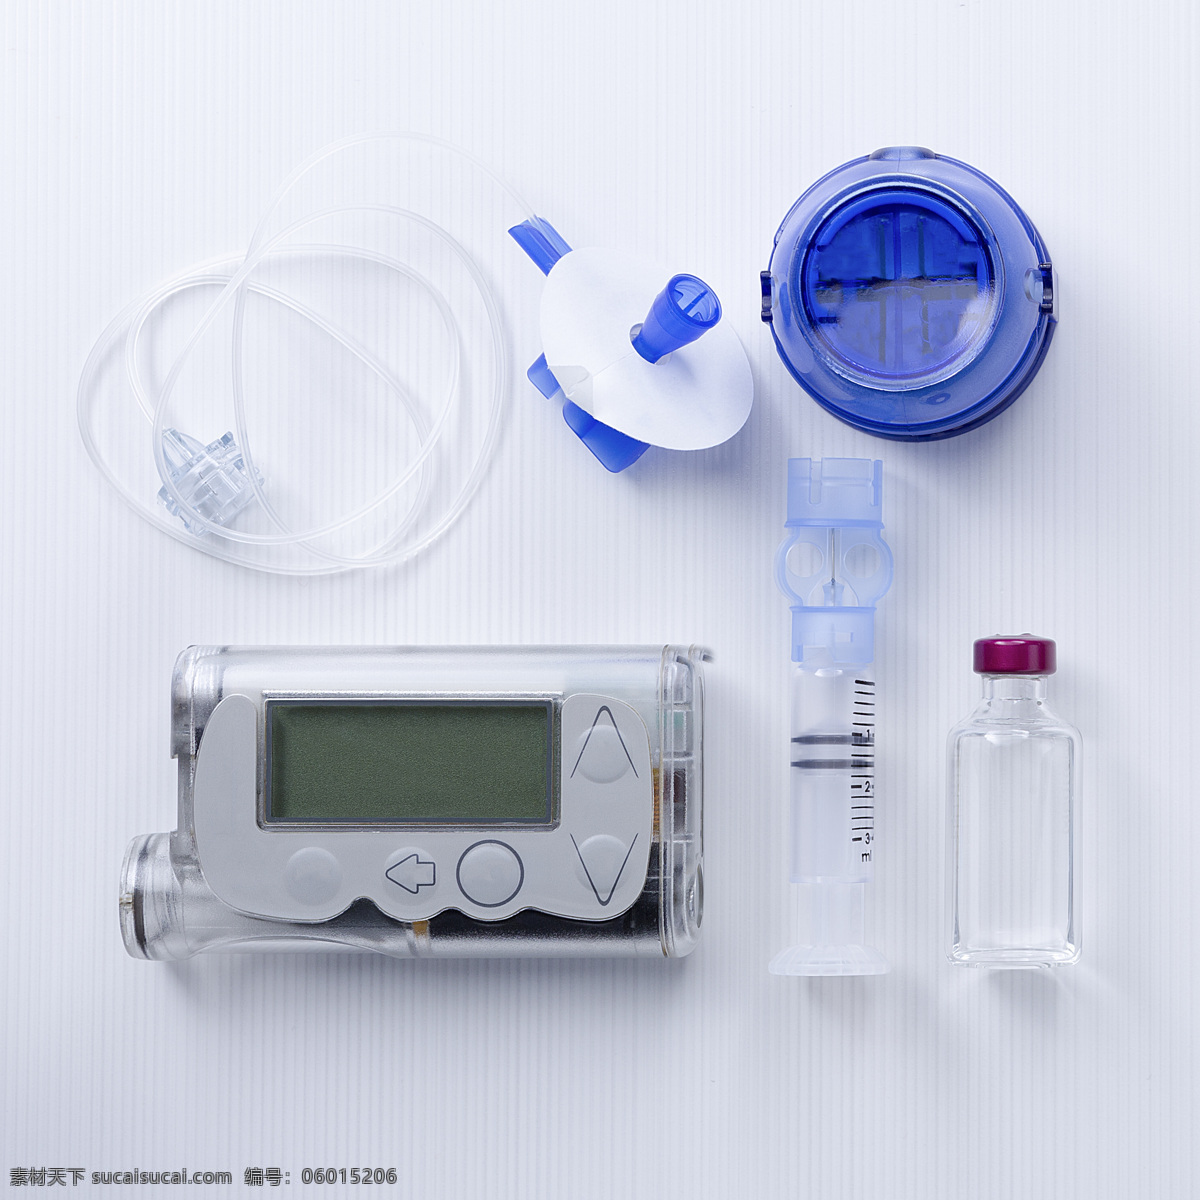 胰岛素泵 电子贴 医疗器械 软管 糖尿病 其他类别 生活百科